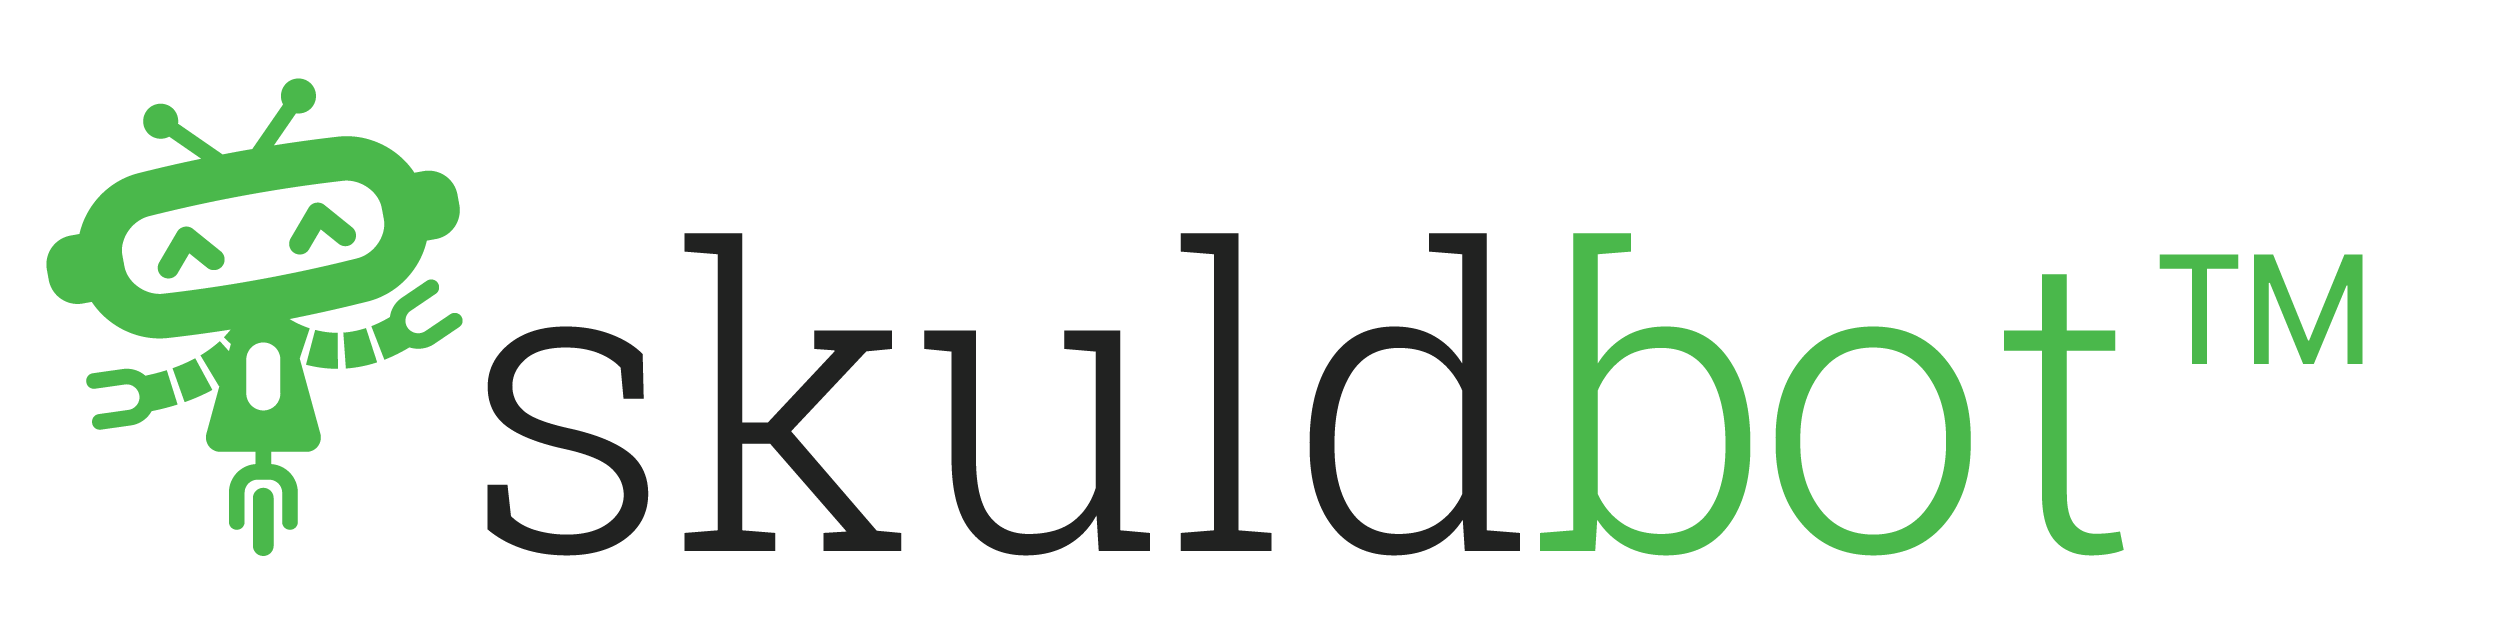 Skuldbot Logo